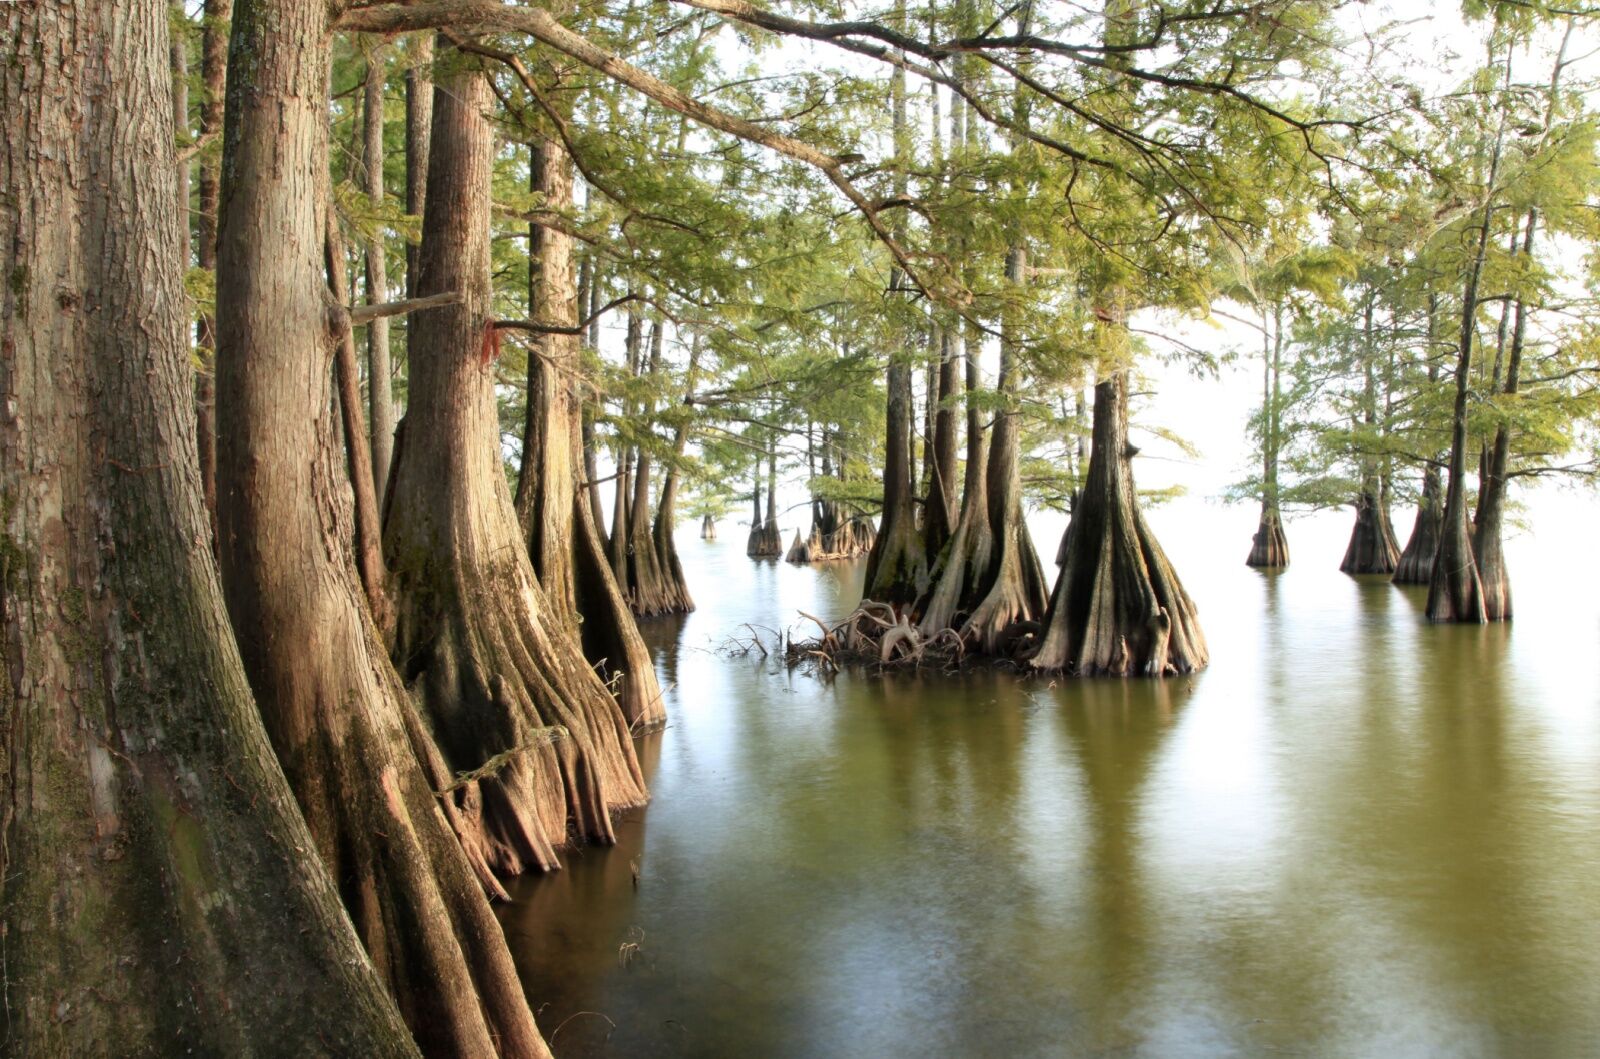 swamp walking - cypress trees in swamp